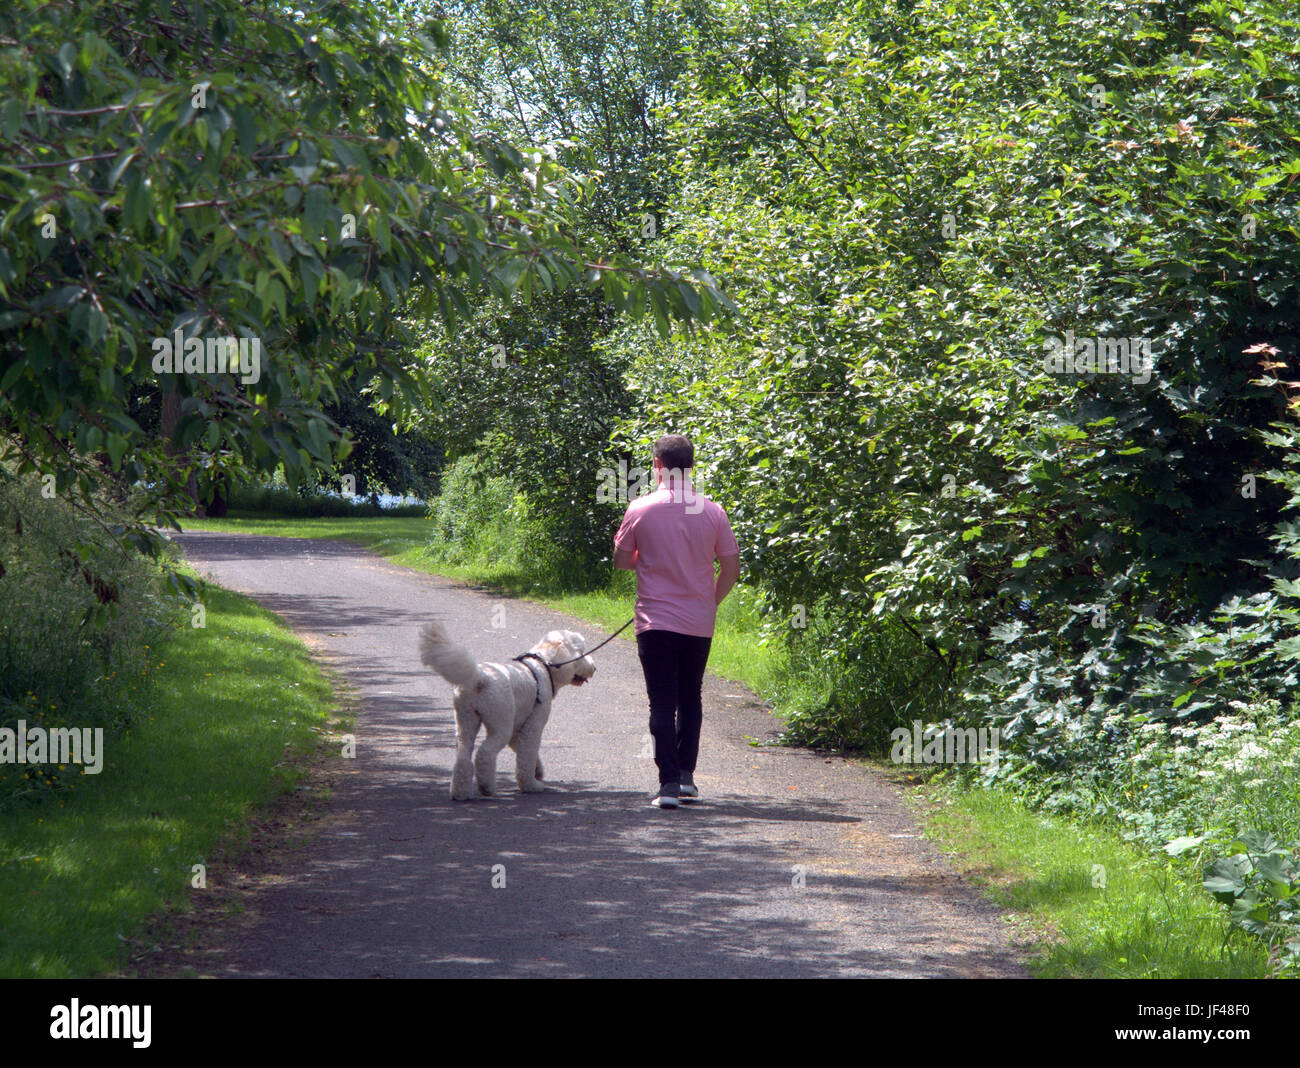 Canale di Forth e Clyde Glasgow Scozia uomo sheepdog cane a camminare giorno soleggiato Foto Stock